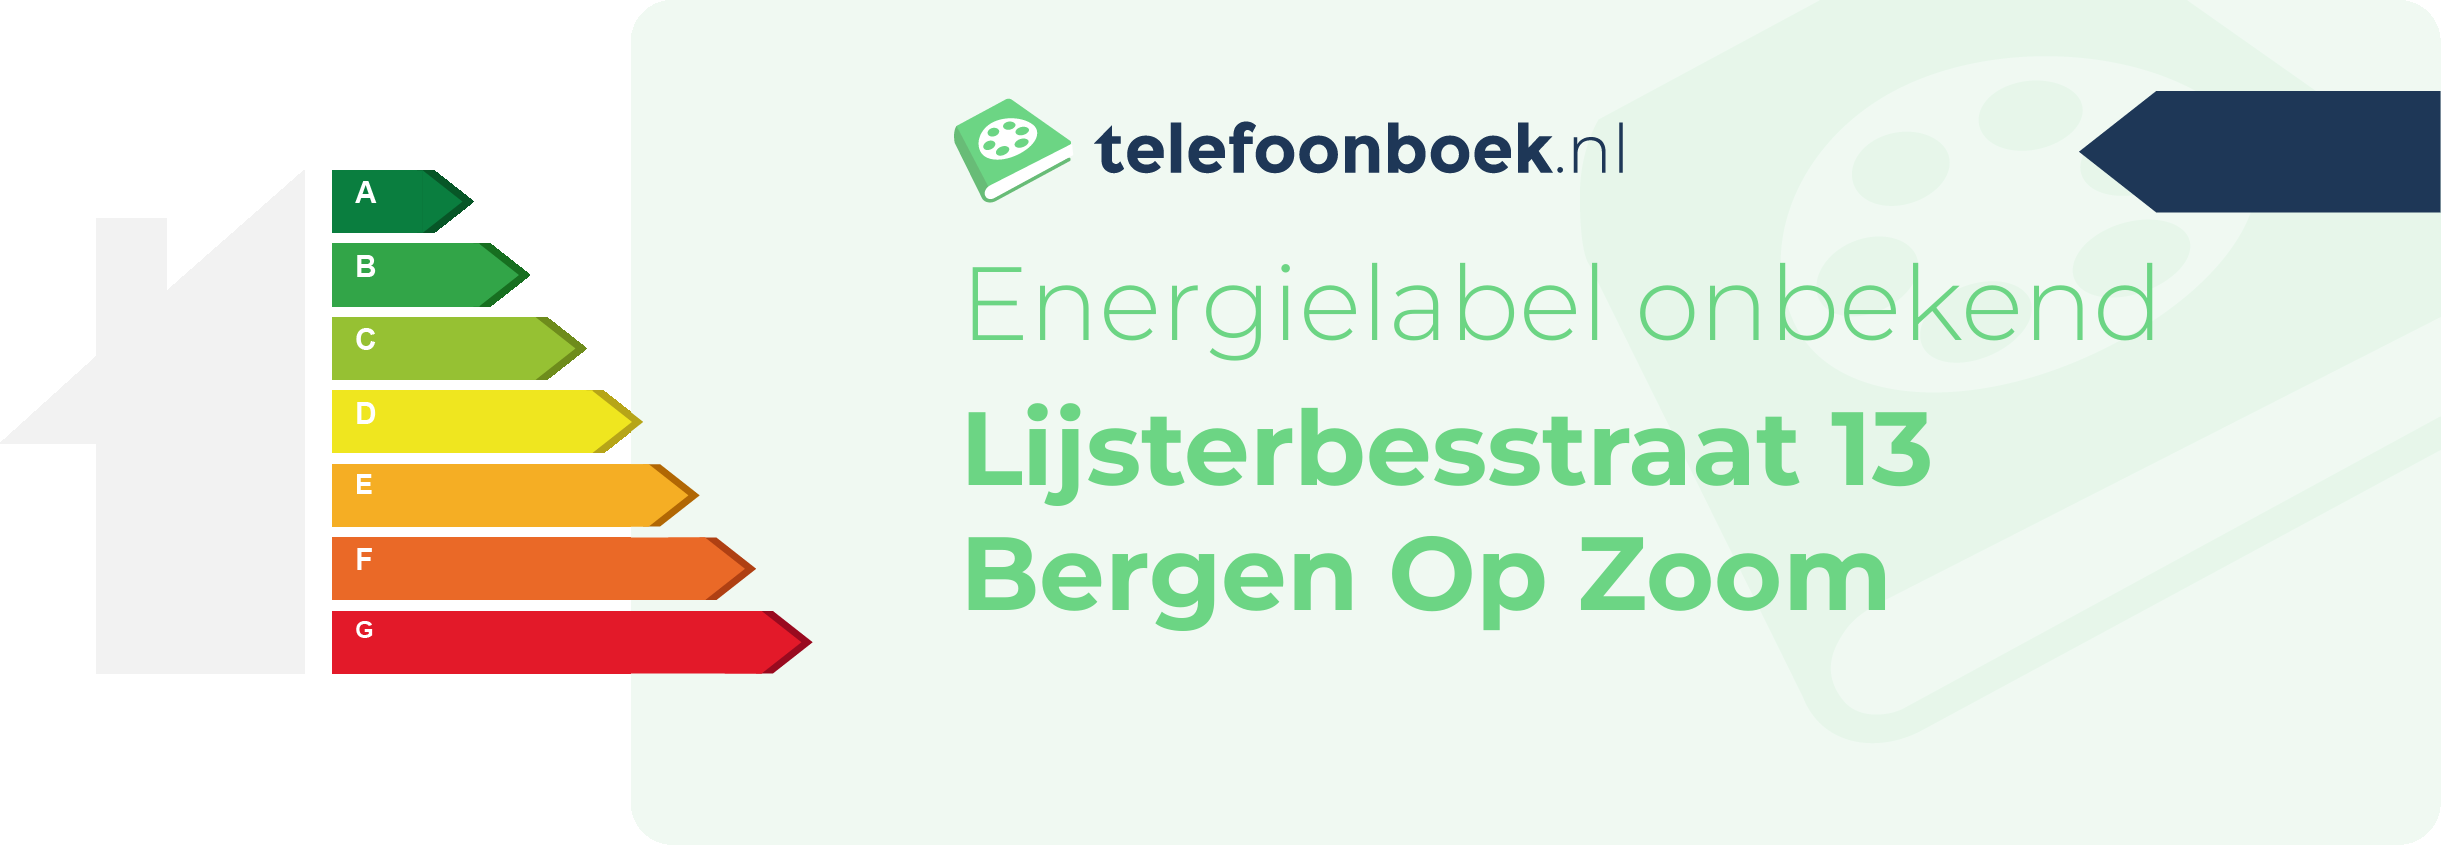 Energielabel Lijsterbesstraat 13 Bergen Op Zoom